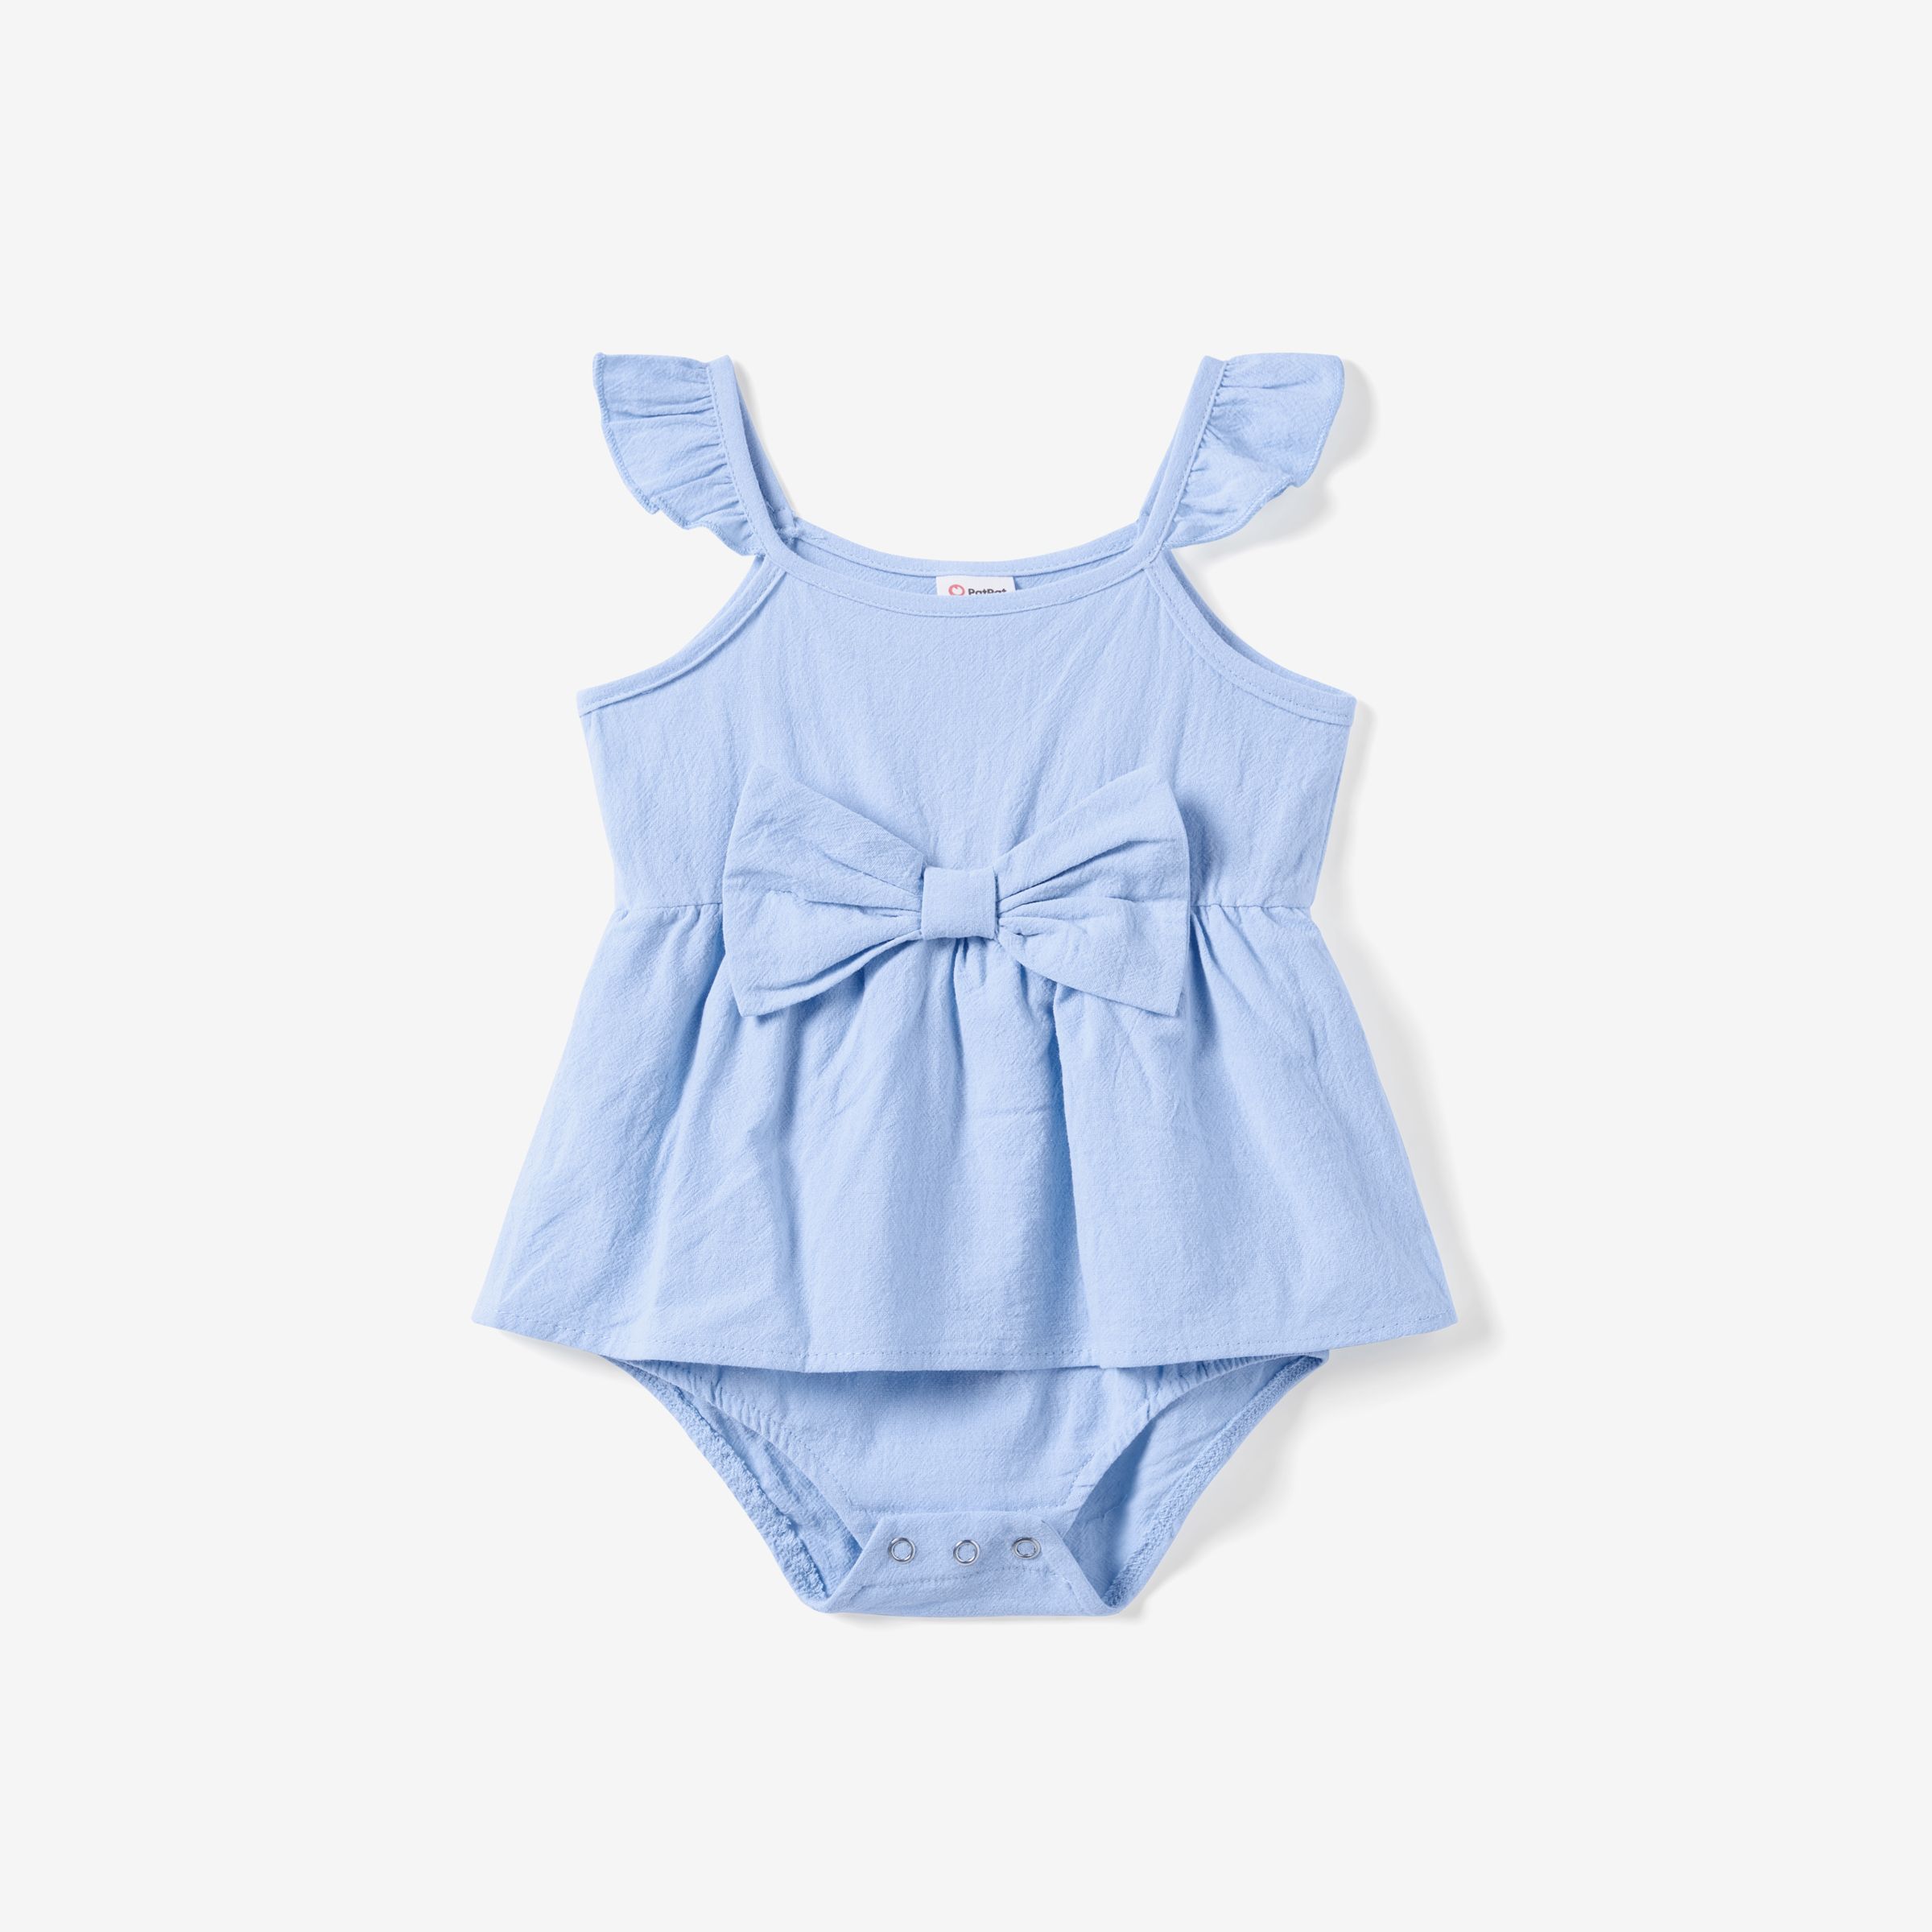 Family Matching Sets Blue Floral Beach Shirt or Irregular Hem Flowy Strap Dress